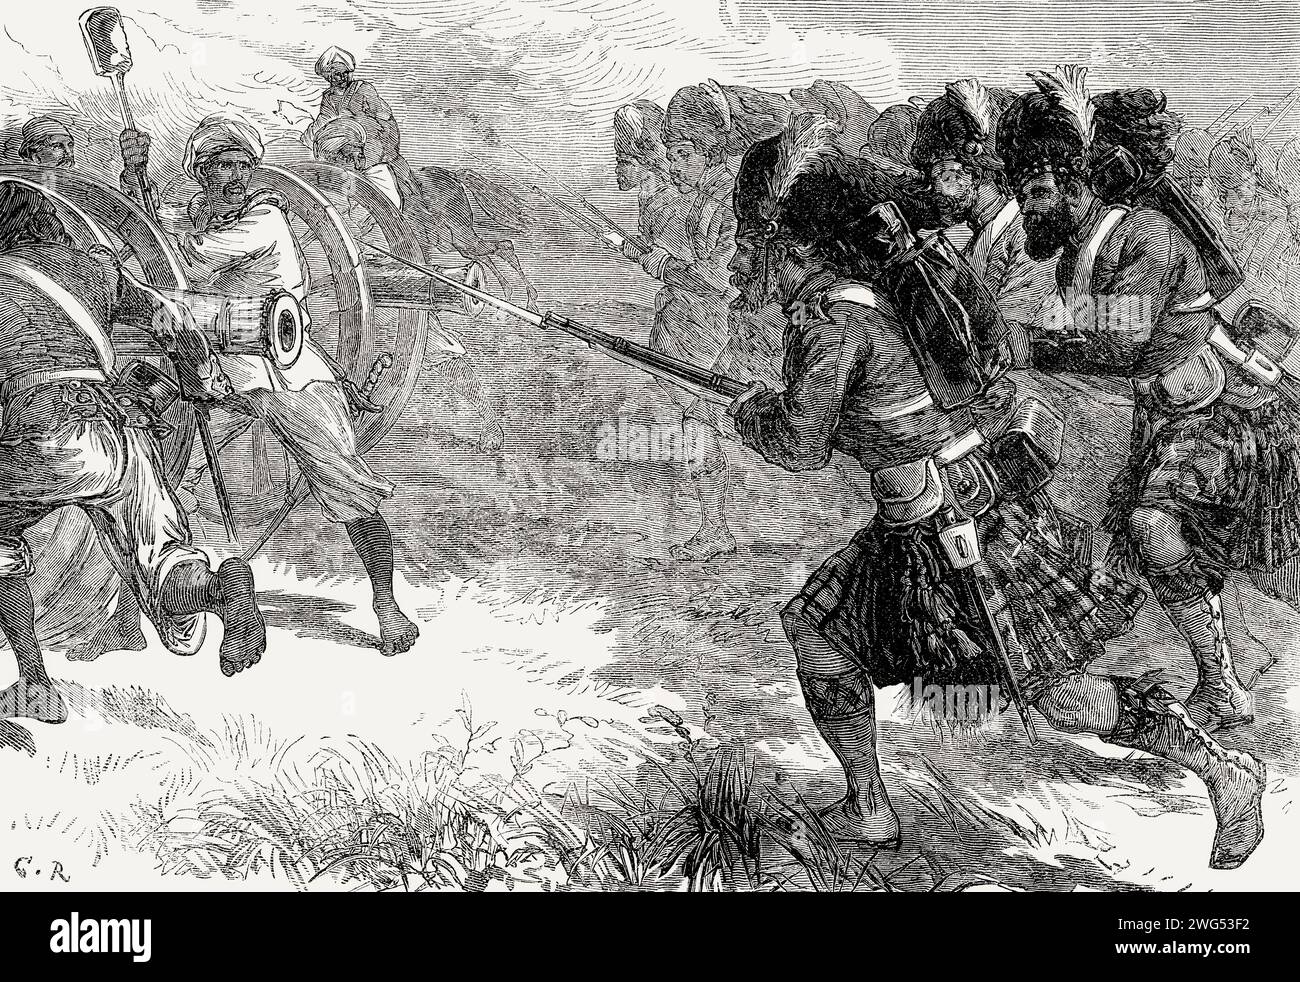 L'assedio di Cawnpore o Kanpur, ribellione indiana del 1857 Foto Stock